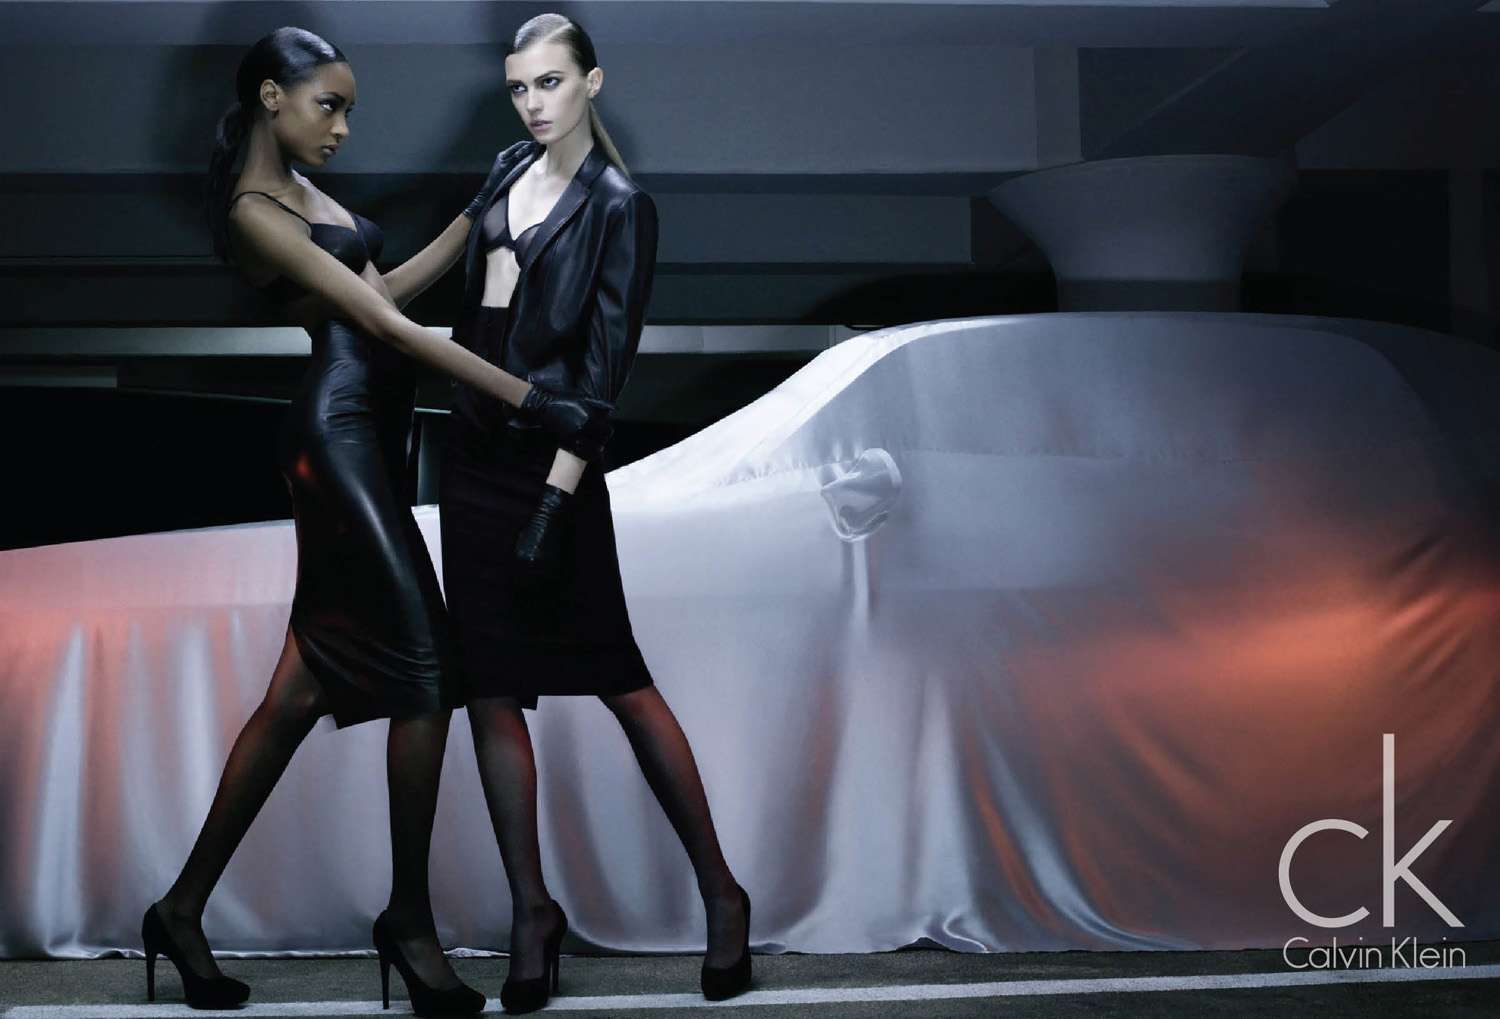 Calvin Klein unveils the Calvin Klein Jeans Fall 2023 Collection